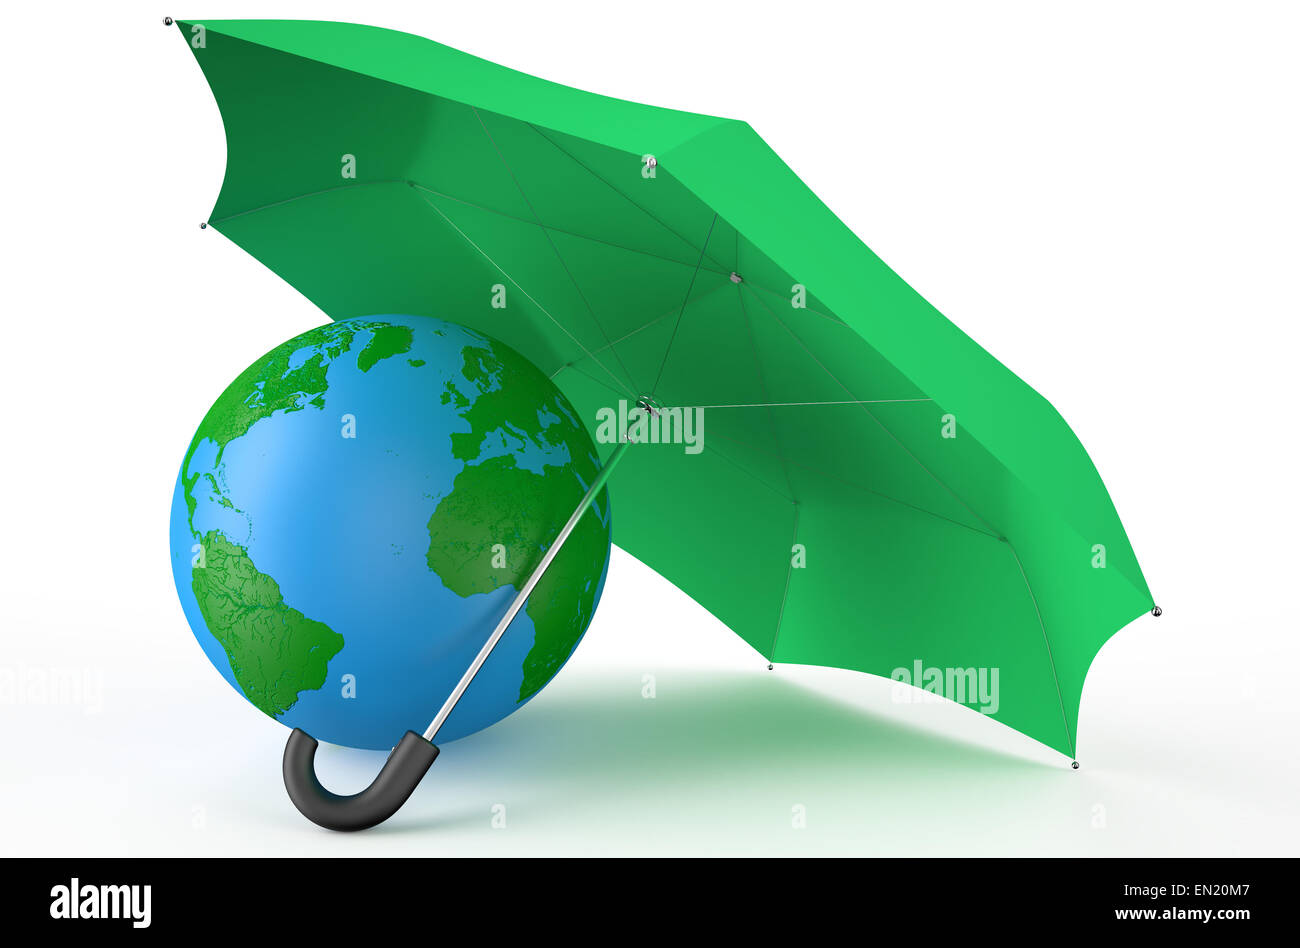 Messa a terra coperto da ombrello verde isolato su sfondo bianco Foto Stock